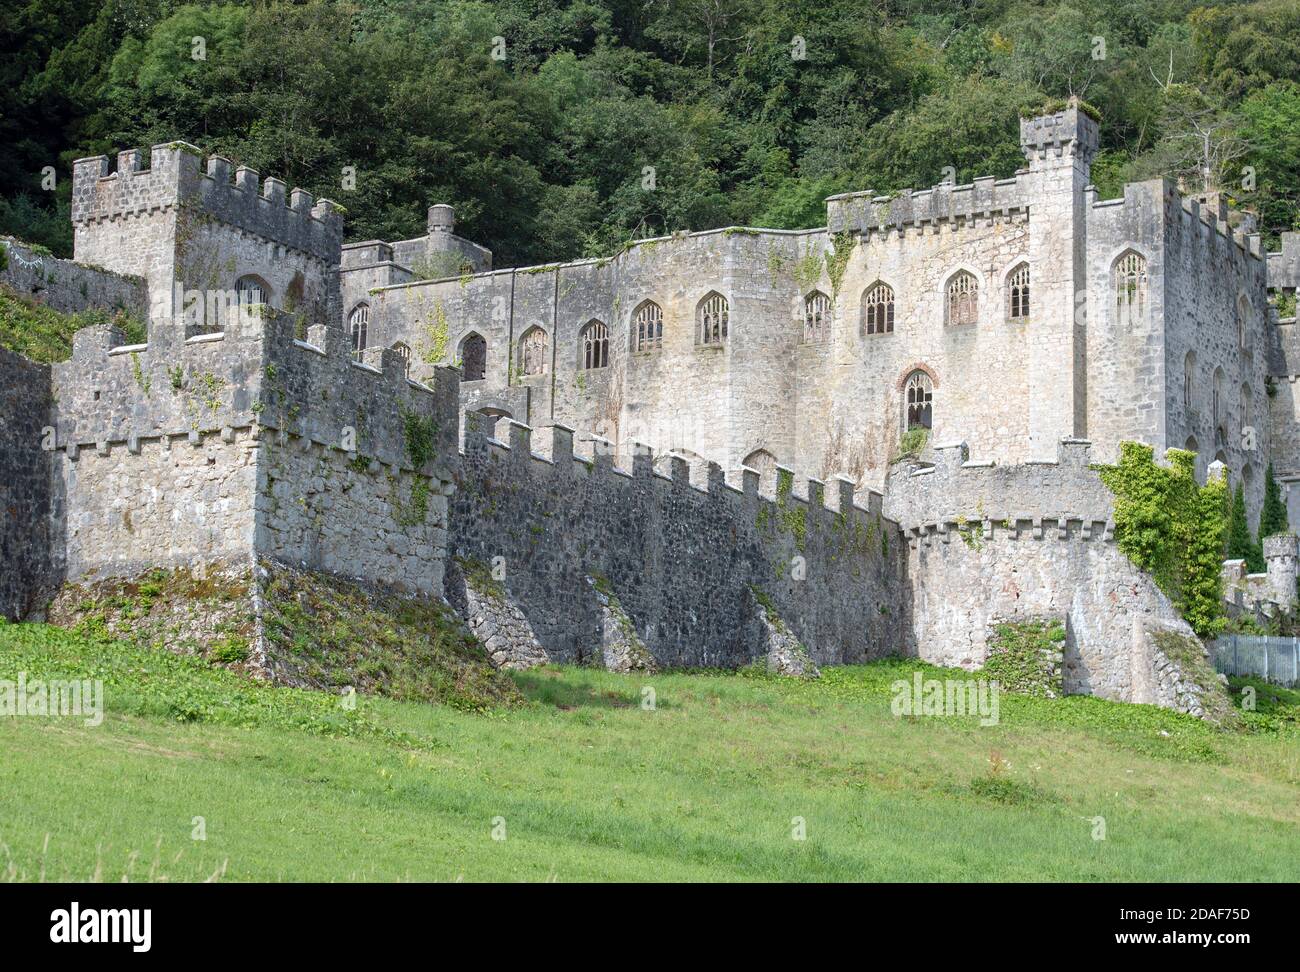 Ruines du château de Gwrych près d'Abergele à Conwy, au nord du pays de Galles, au Royaume-Uni Banque D'Images